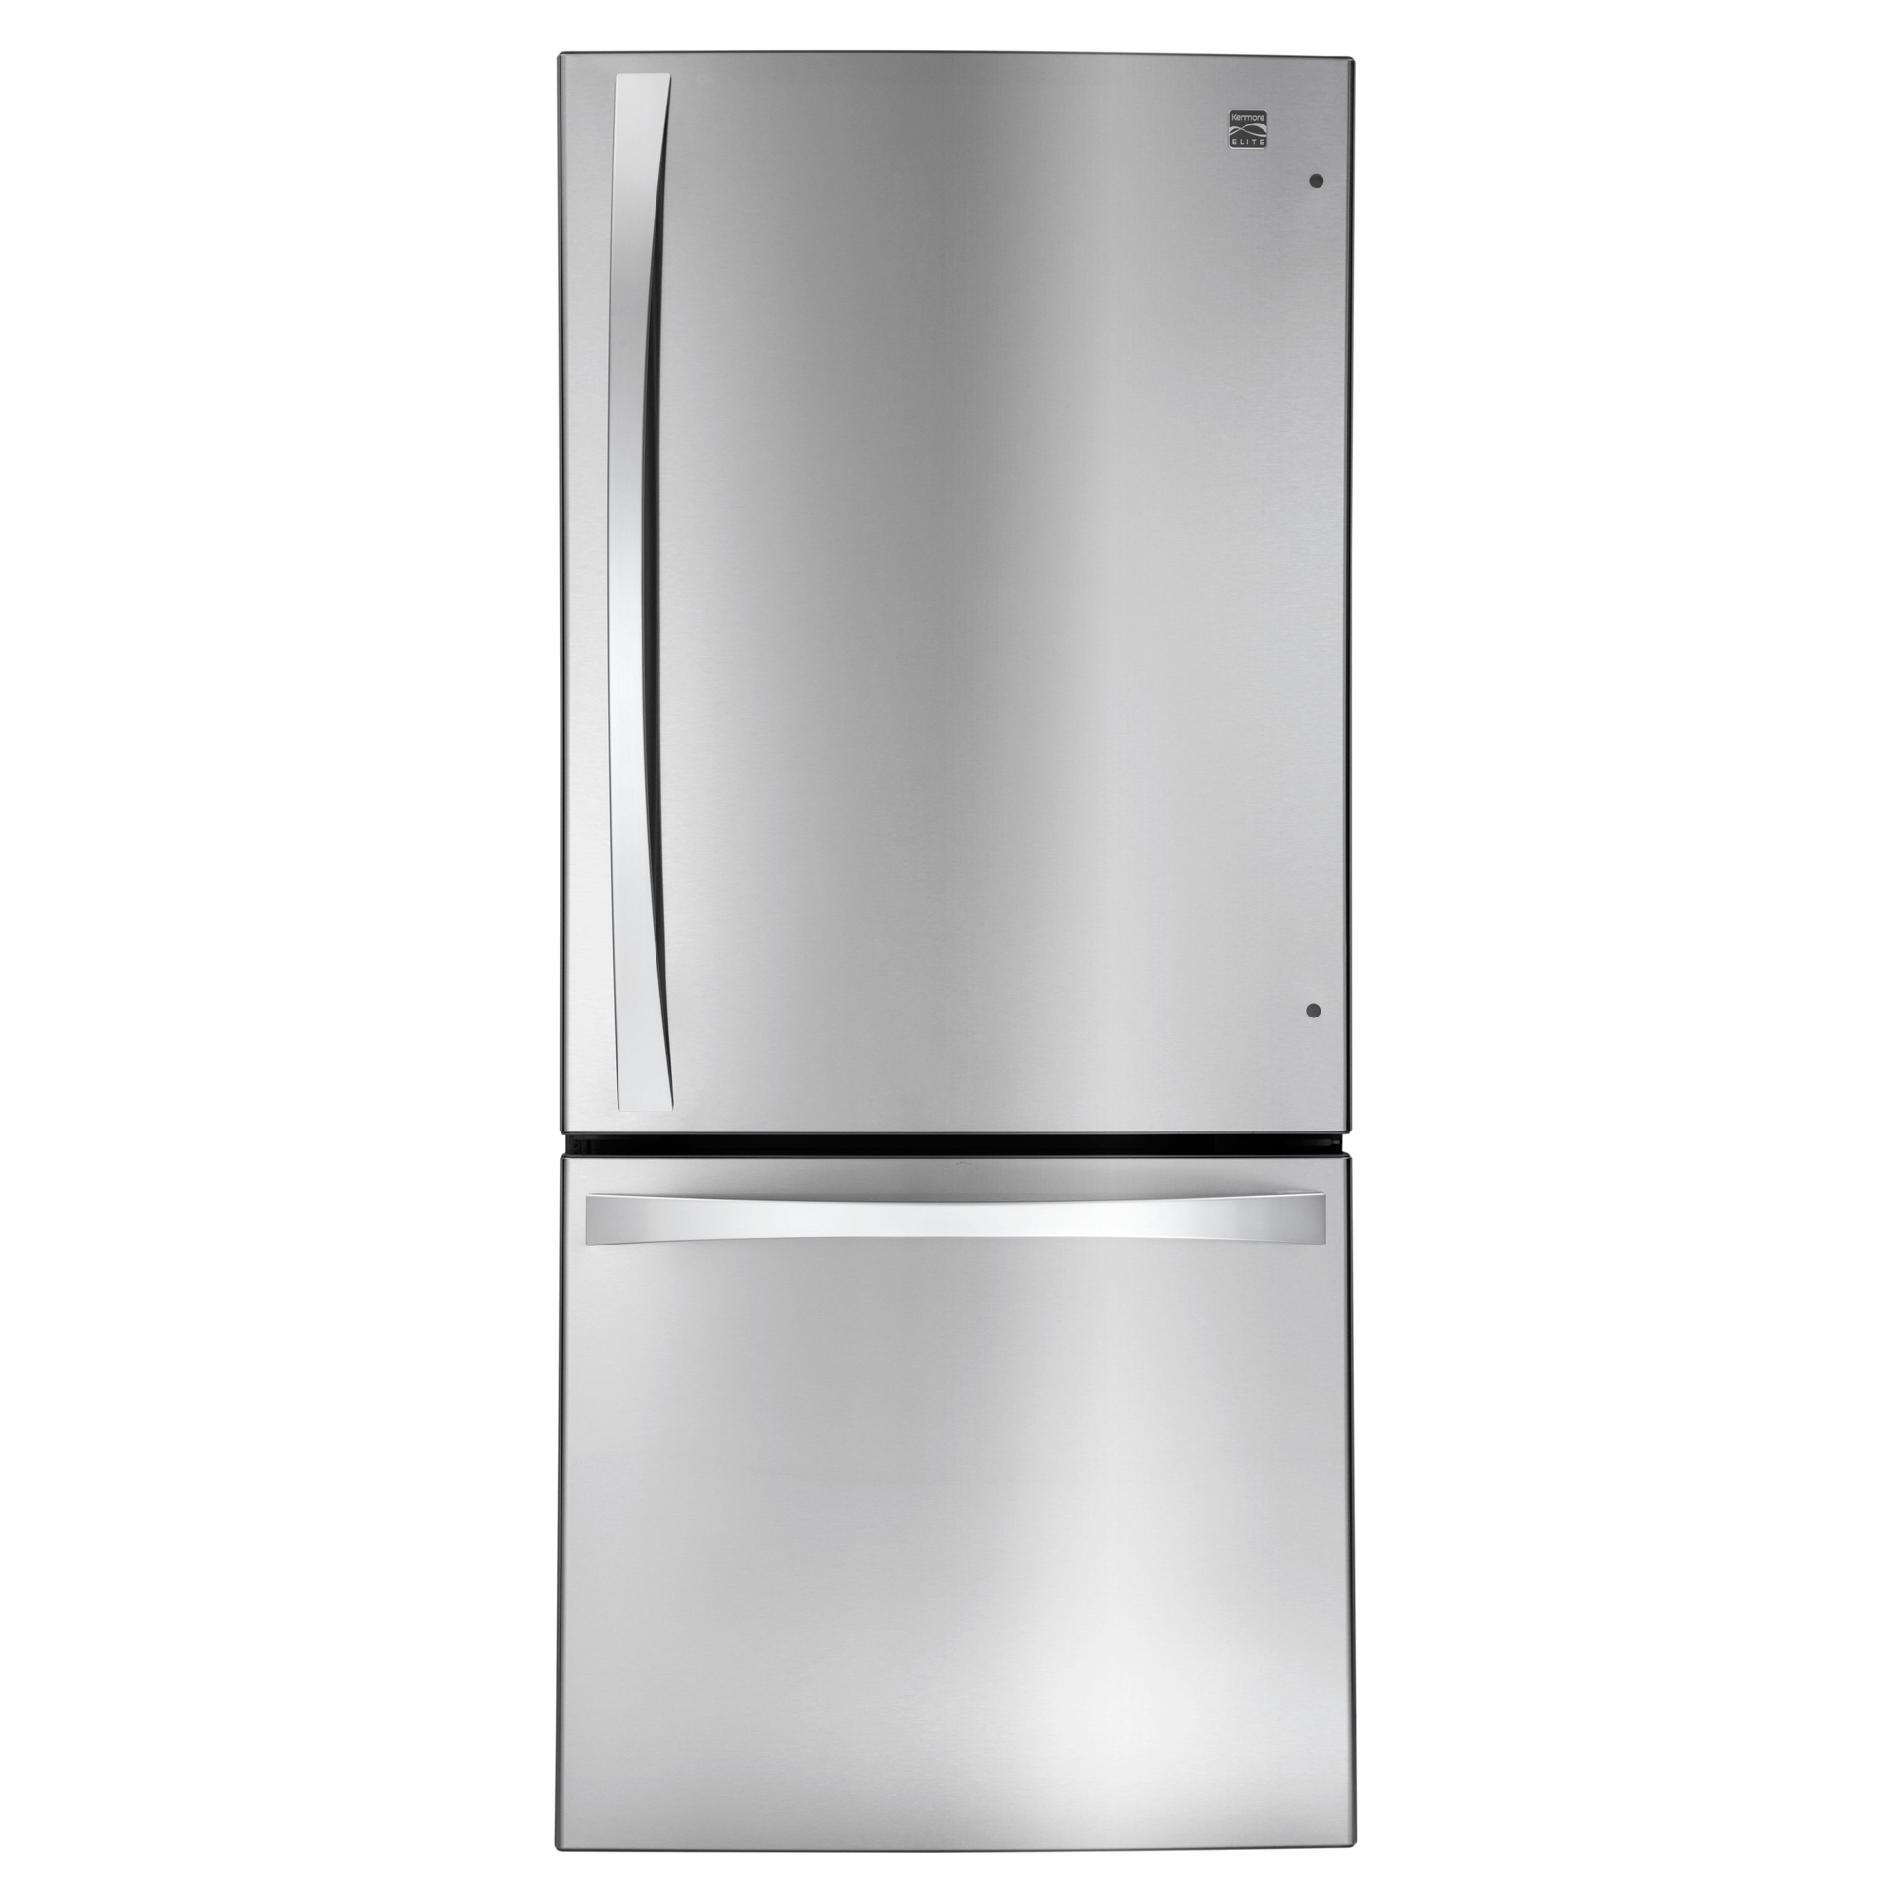 Kenmore Elite 79023 22.1 cu. ft. Bottom-Freezer Refrigerator